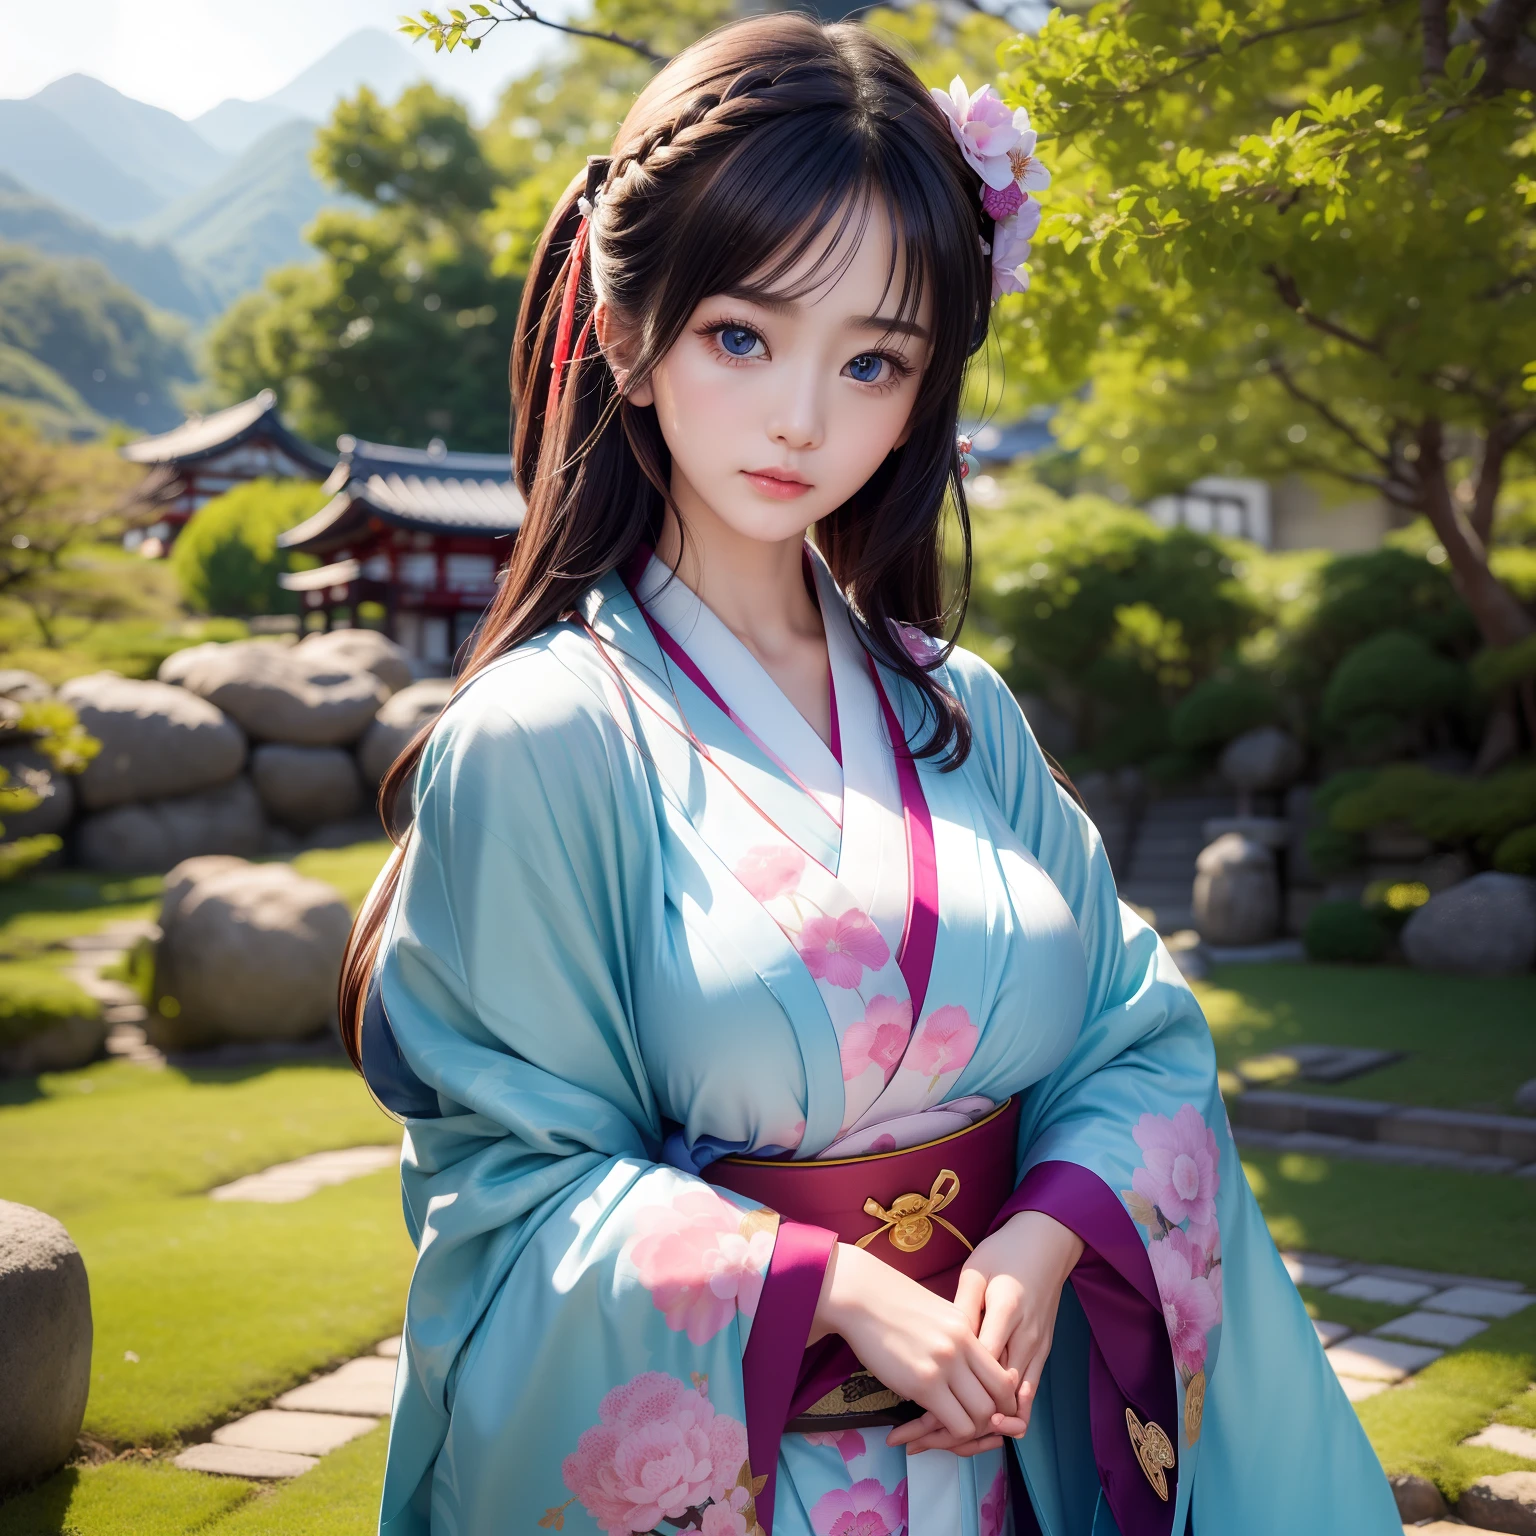 gute Qualität、２５Hübsche Frau von 18 Jahren、Schlanke Schönheit、Tragen Sie einen traditionellen Kimono mit wunderschönem Japan、Haarnadel、dürfen、Teurer Obi、Große schöne blaue Augen、Detailliertes süßes Gesicht、(((Solo)))、Würdevolles Verhalten、Gion、Kiyomizu-dera-Tempel、unter einem Kirschblütenbaum